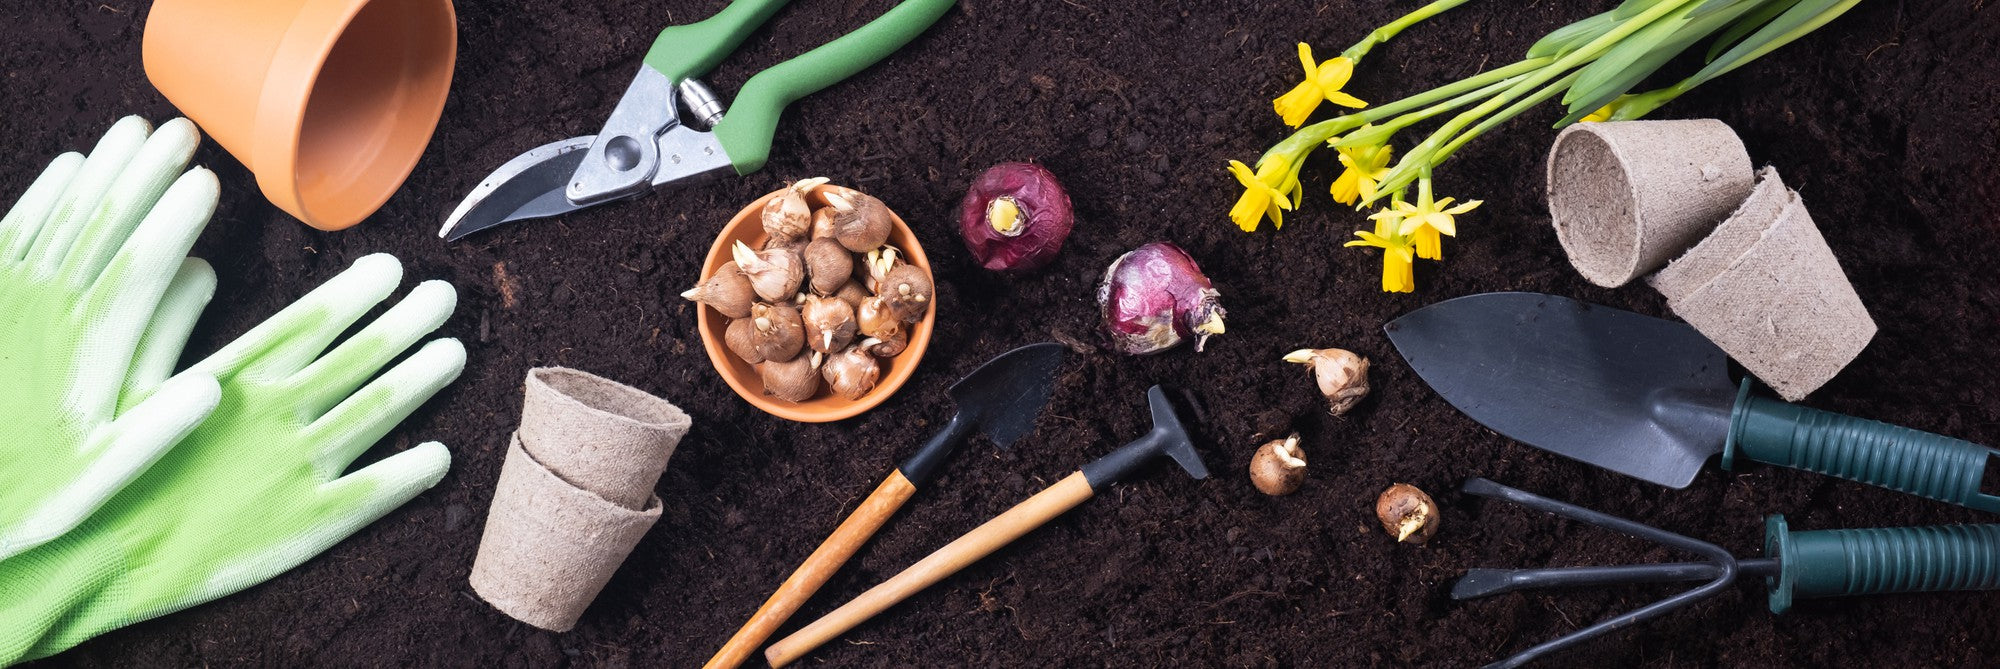 Narzędzia ogrodnicze ręczne - jak wybrać?